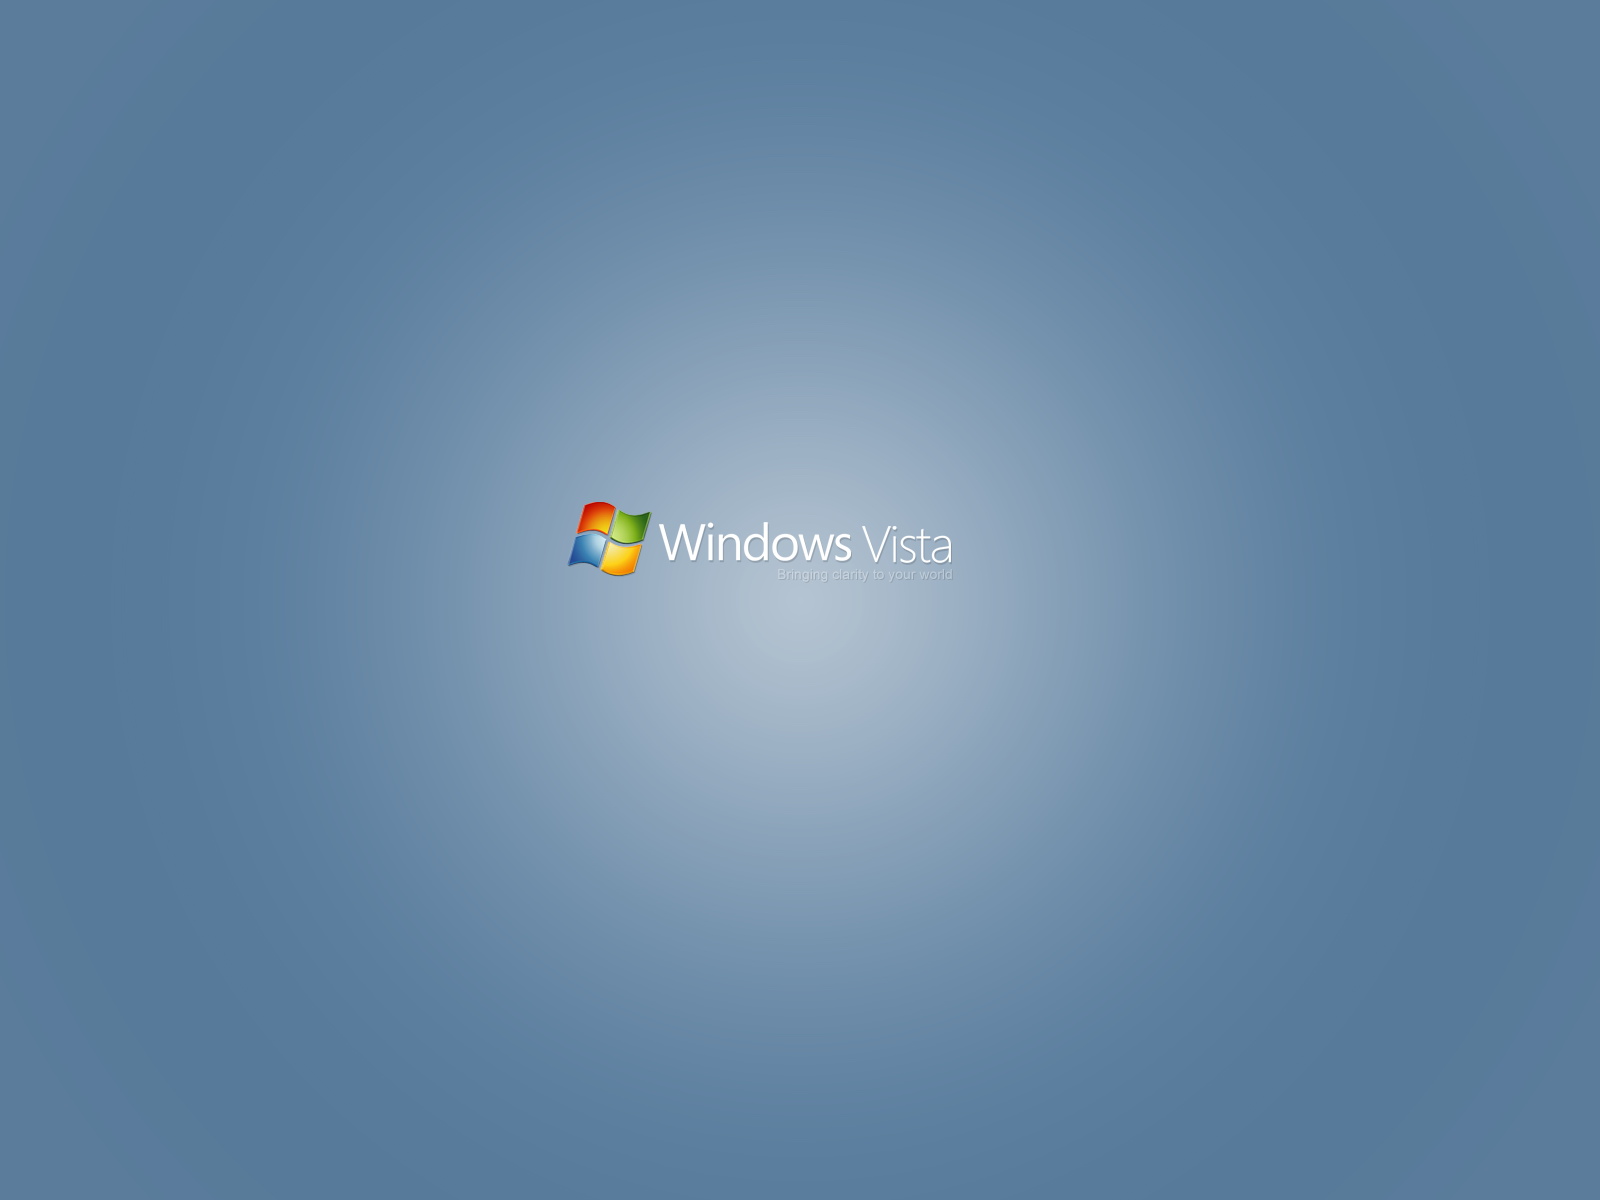 壁纸1600x1200Windows Vista壁纸 壁纸13壁纸 Windows Vista壁纸壁纸 Windows Vista壁纸图片 Windows Vista壁纸素材 系统壁纸 系统图库 系统图片素材桌面壁纸